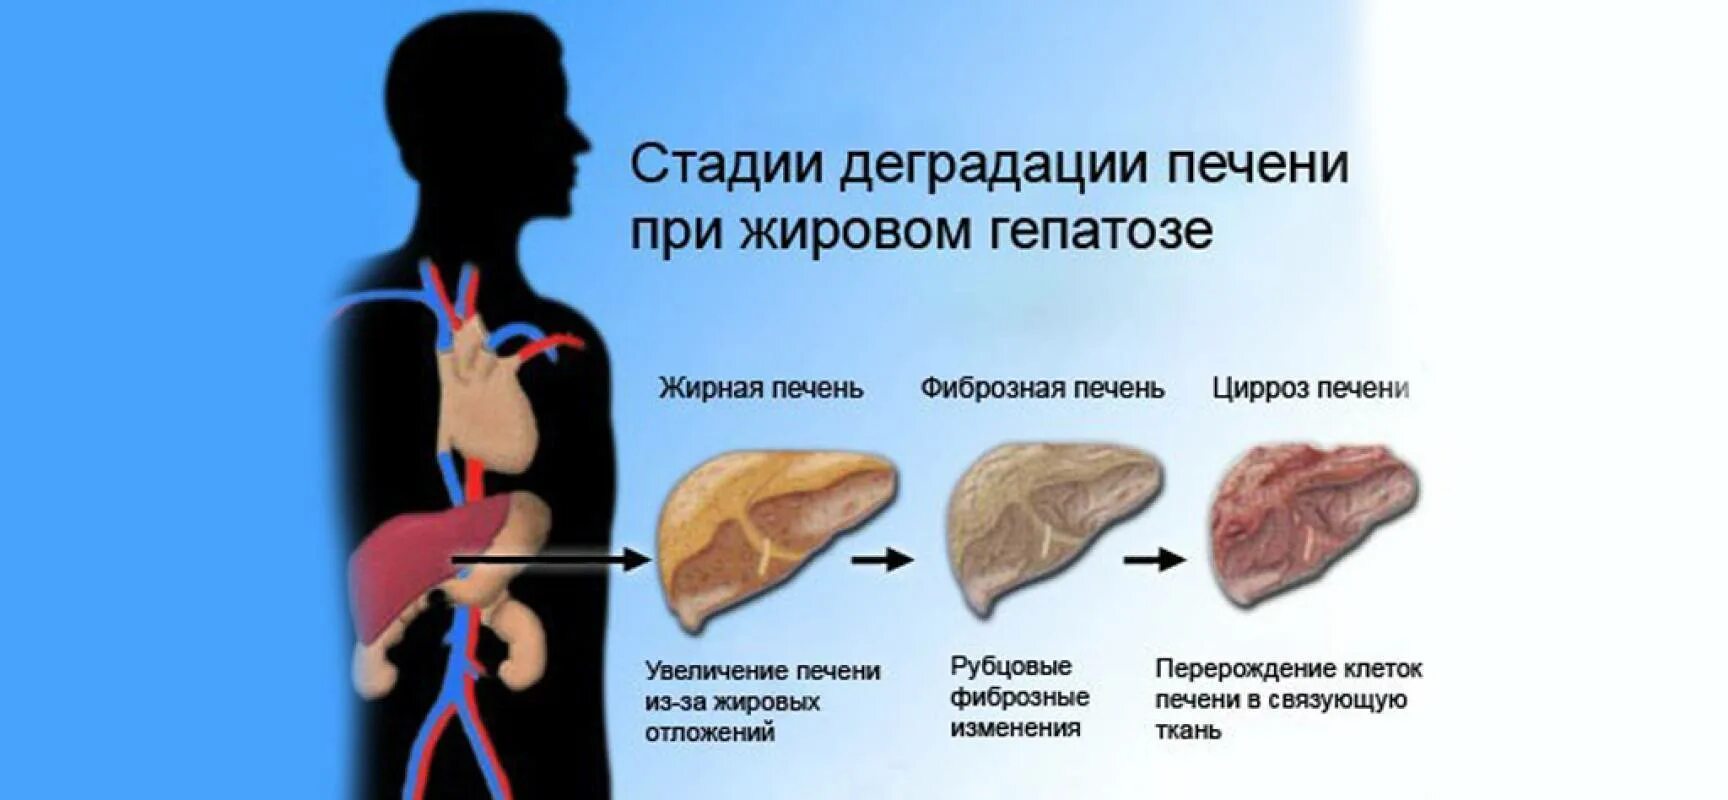 Жировой гепатоз печени. Симптомы жирового гепатоза печени. Диффузная печень причины